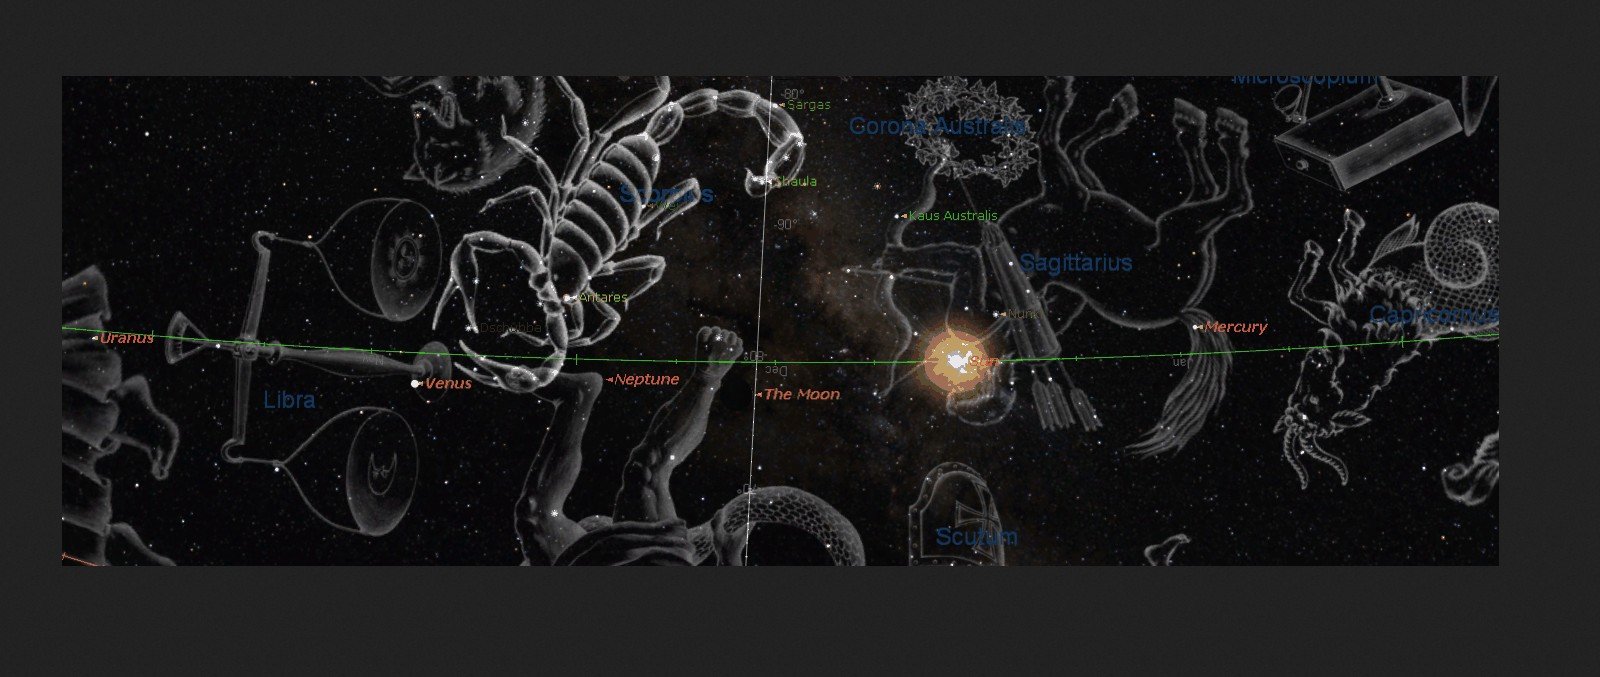 хороскопът на Тайгър Уудс - слабо зрение